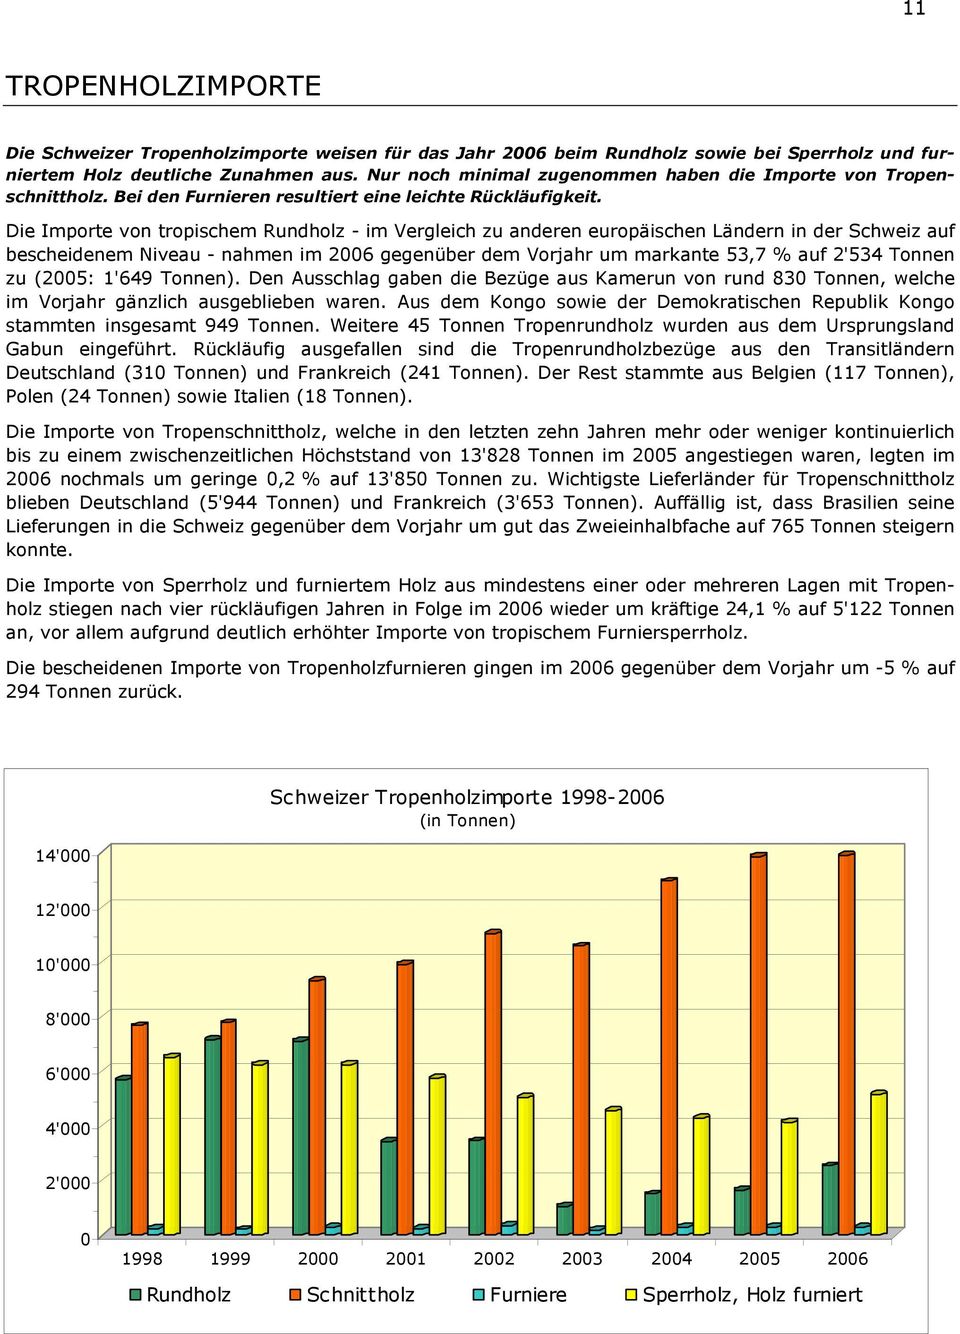 Die Importe von tropischem Rundholz - im Vergleich zu anderen europäischen Ländern in der Schweiz auf bescheidenem Niveau - nahmen im 2006 gegenüber dem Vorjahr um markante 53,7 % auf 2'534 Tonnen zu